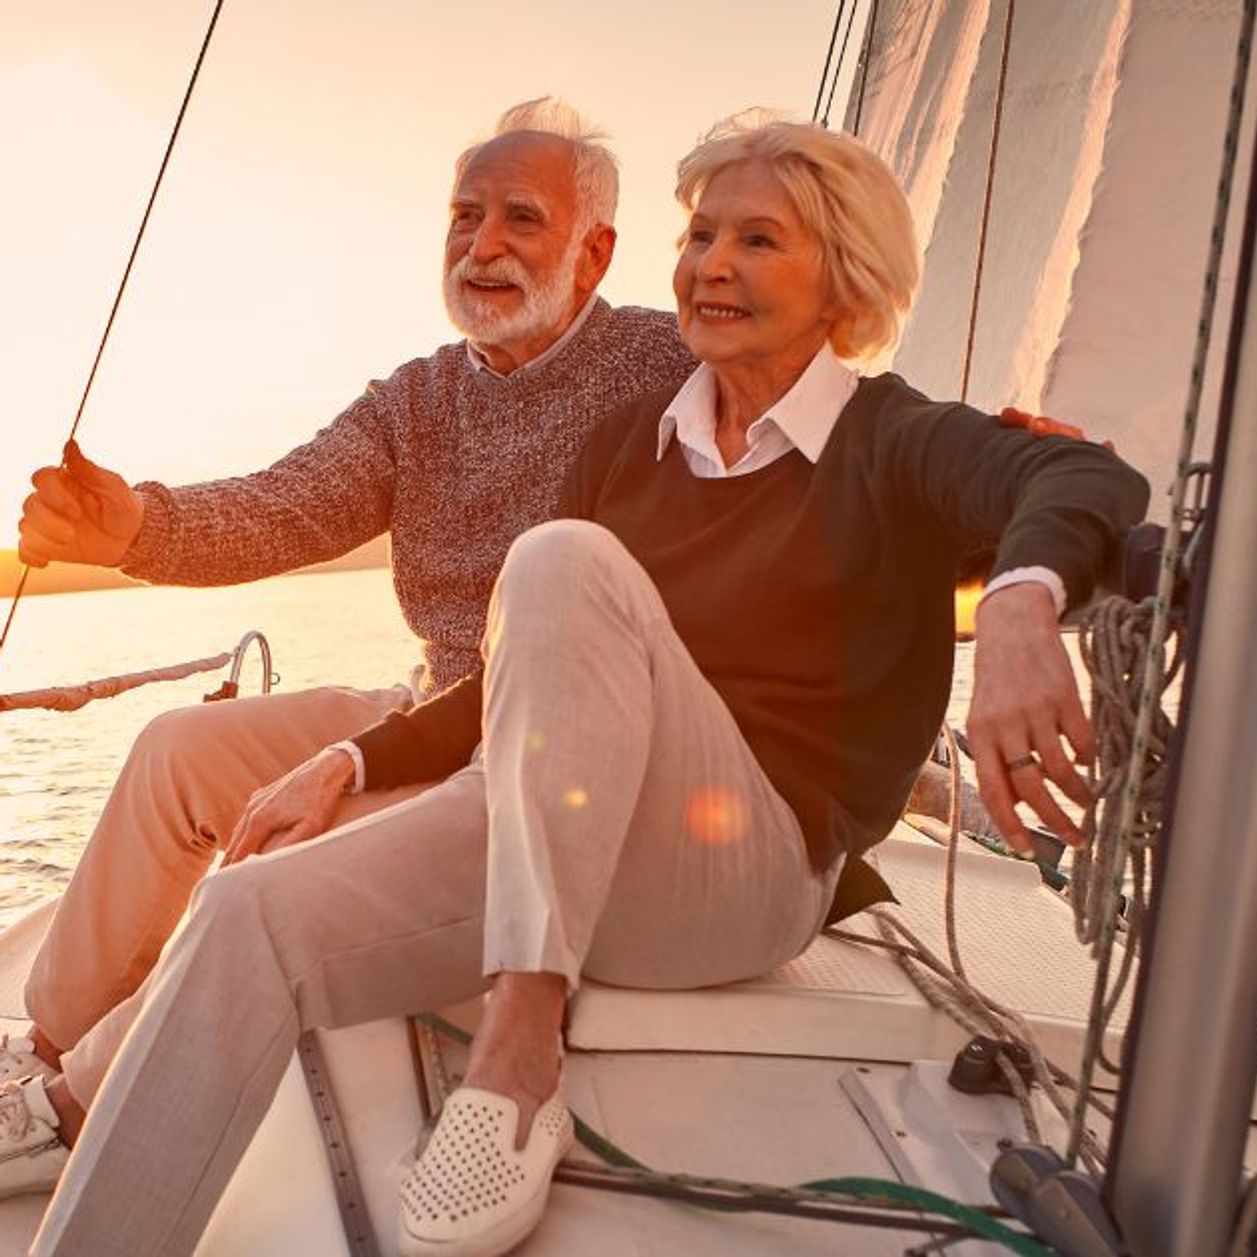 voici 8 choses à éviter pour vivre heureux et épanouis après 60 ans